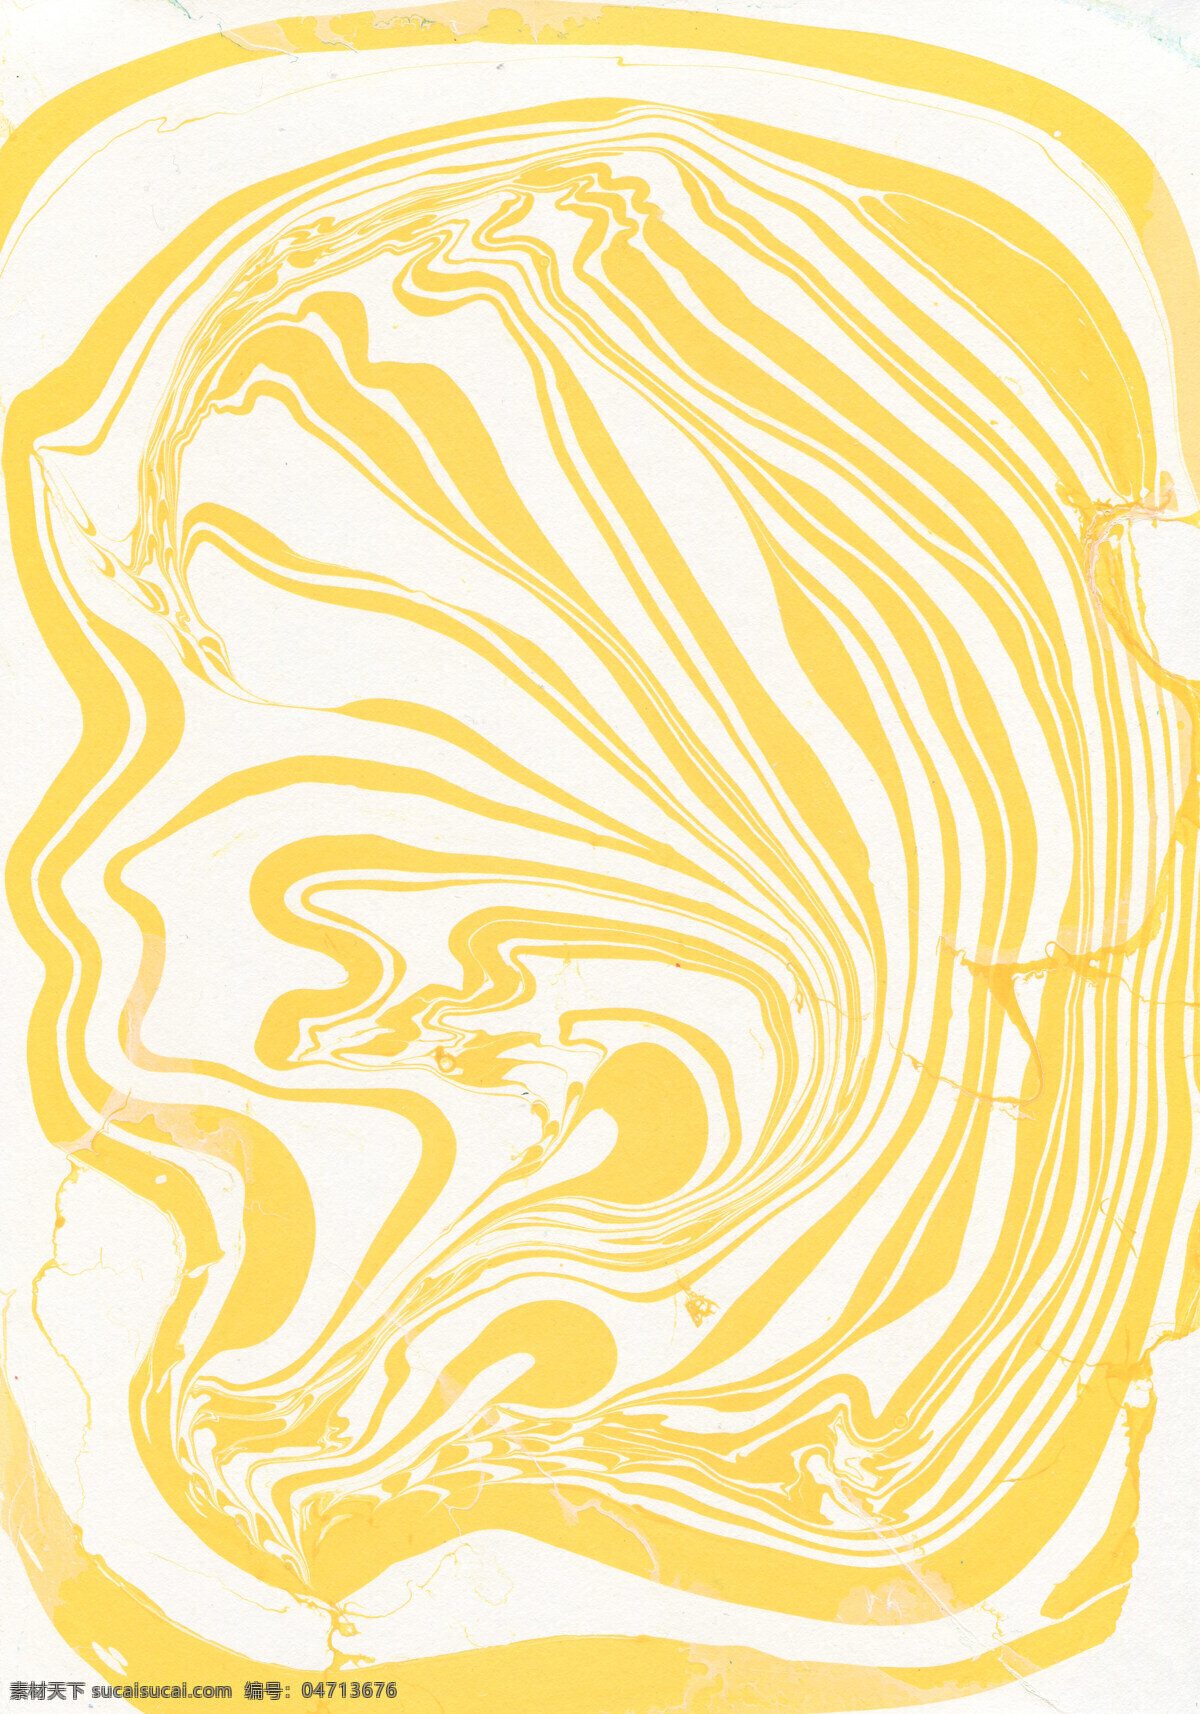 明亮 艳丽 黄色 漩涡 纹理 壁纸 图案 装饰设计 壁纸图案 橙黄色调 大理石纹理 漩涡纹理